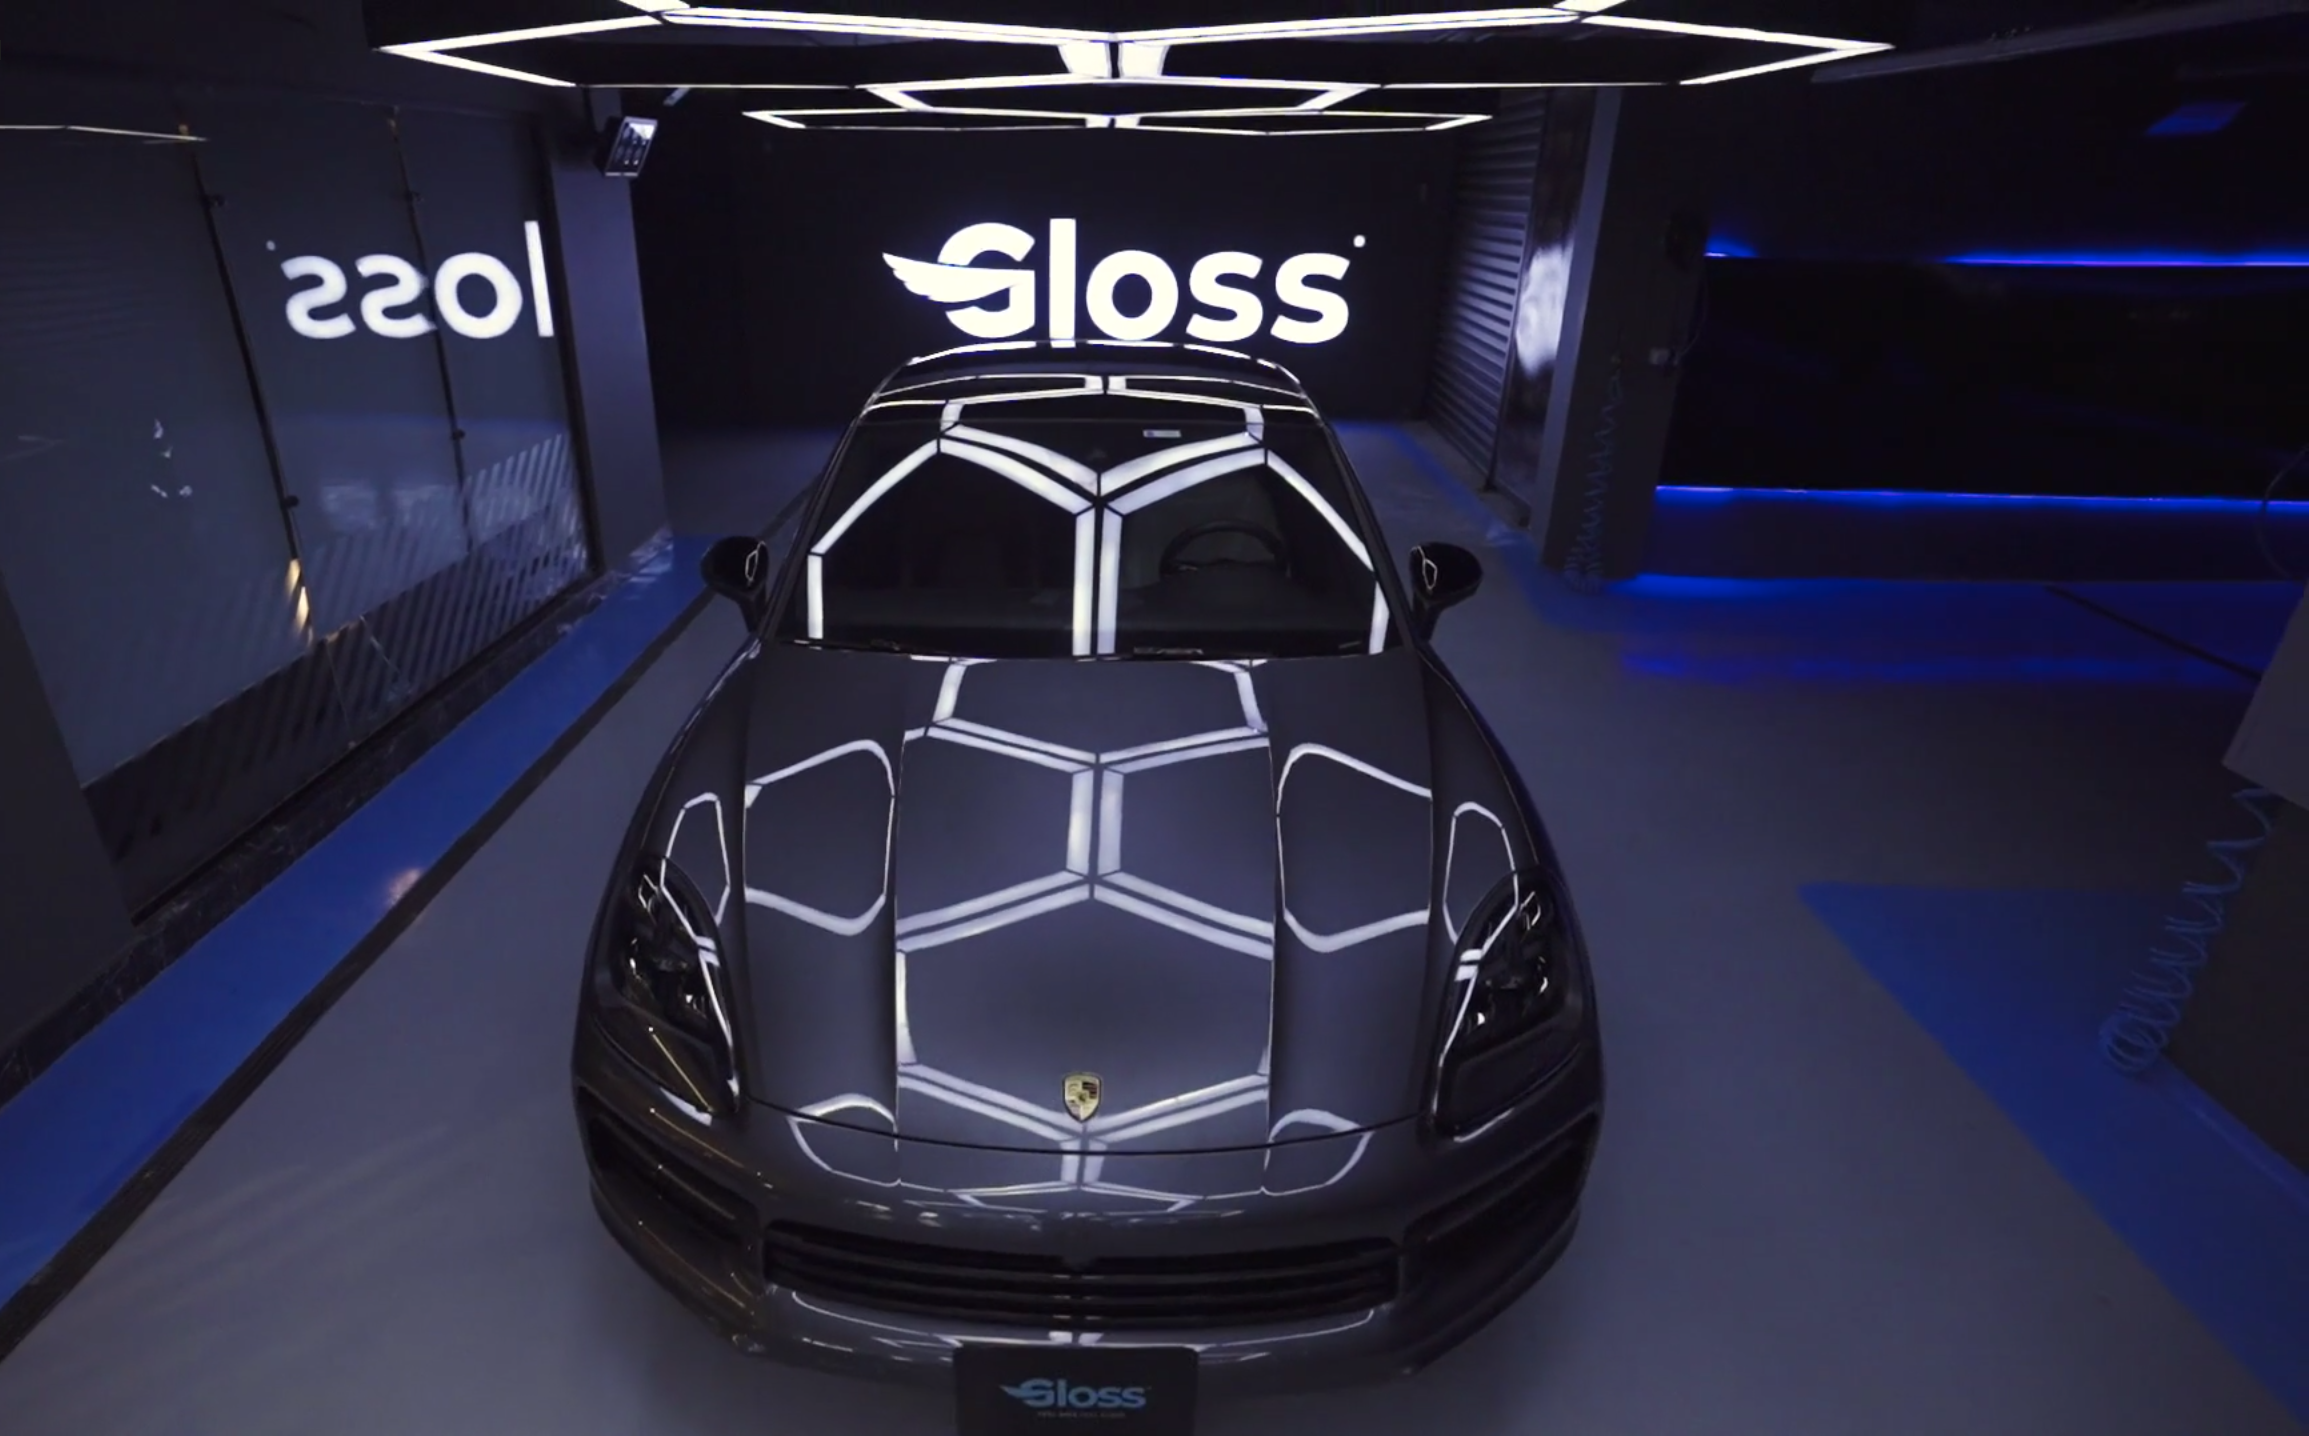 Gloss Porsche